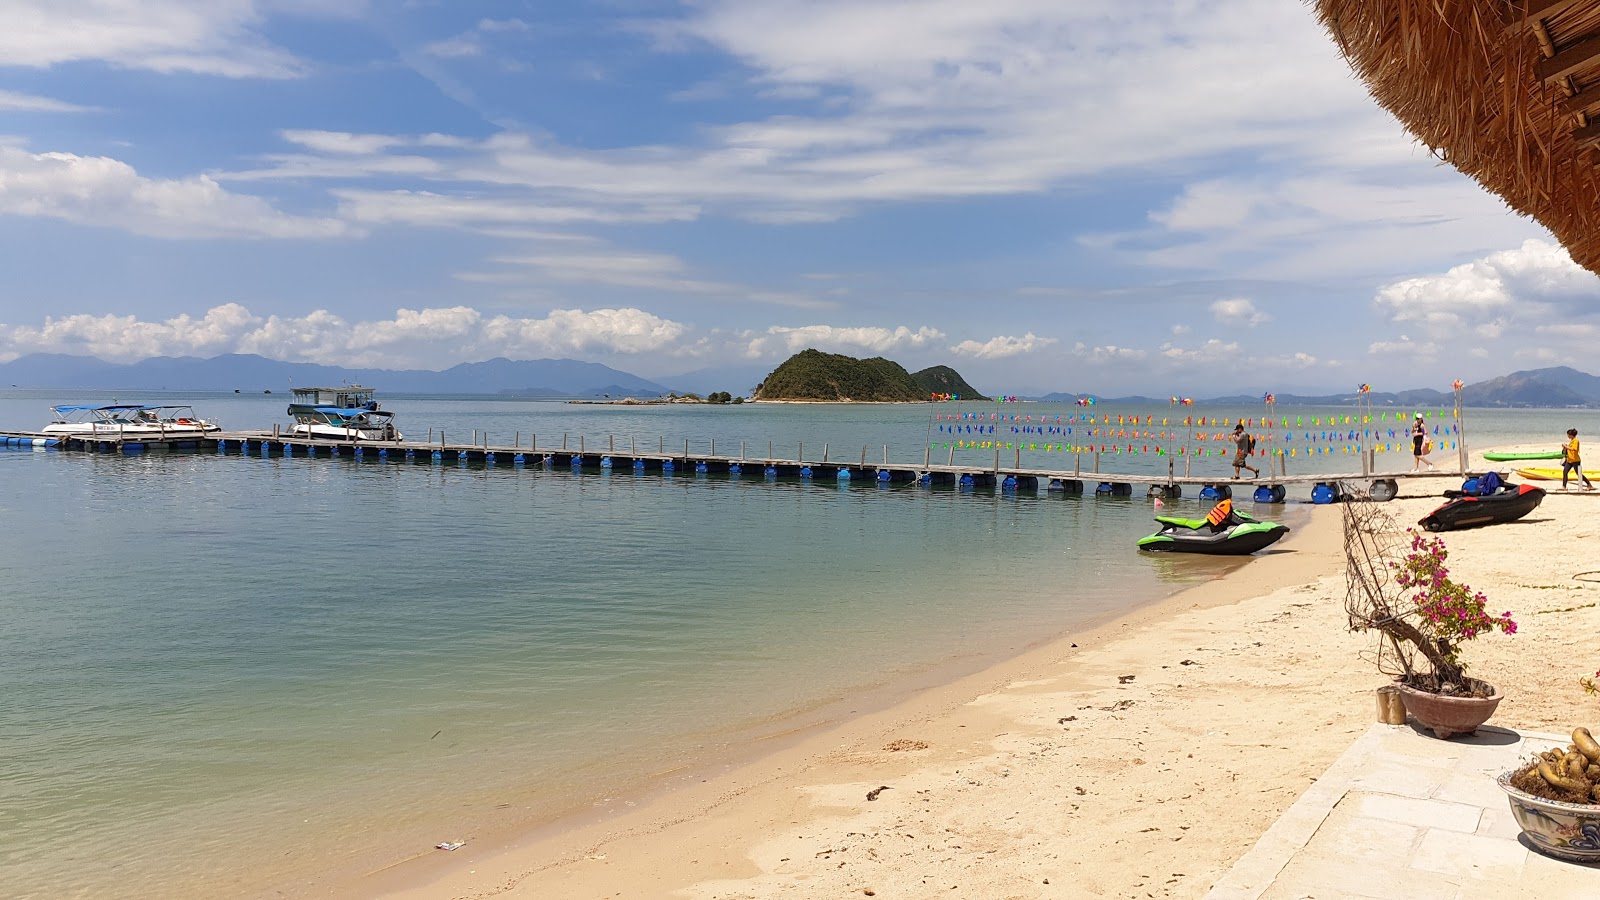 Dao Diep Son Island Beach'in fotoğrafı geniş plaj ile birlikte